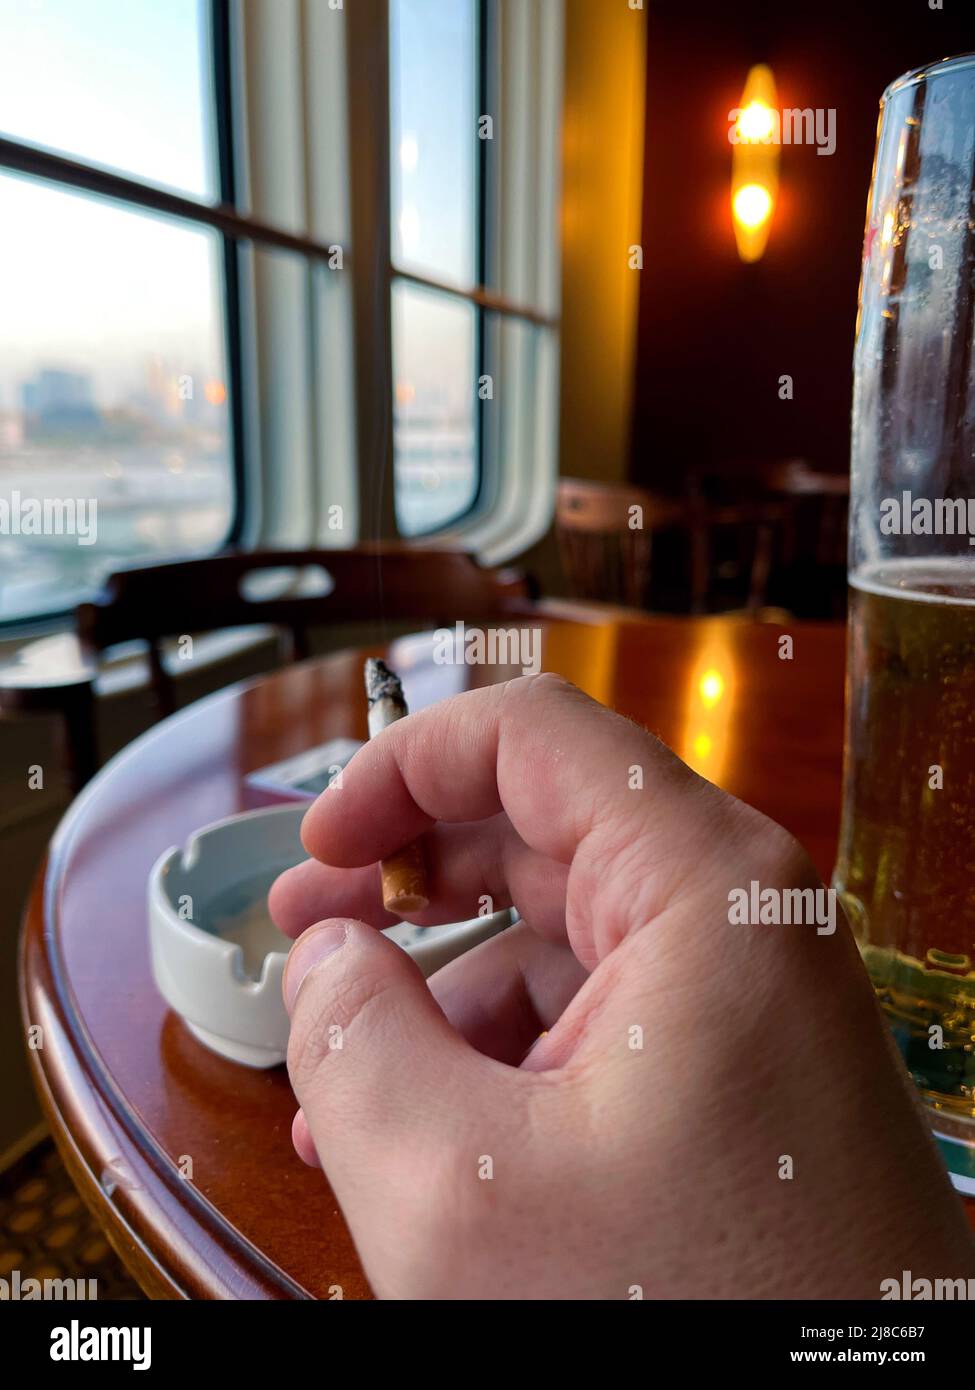 la mano de un hombre sostiene un cigarrillo contra el fondo de las ventanas en una barra de cerveza. el concepto de los daños de fumar. Foto de stock